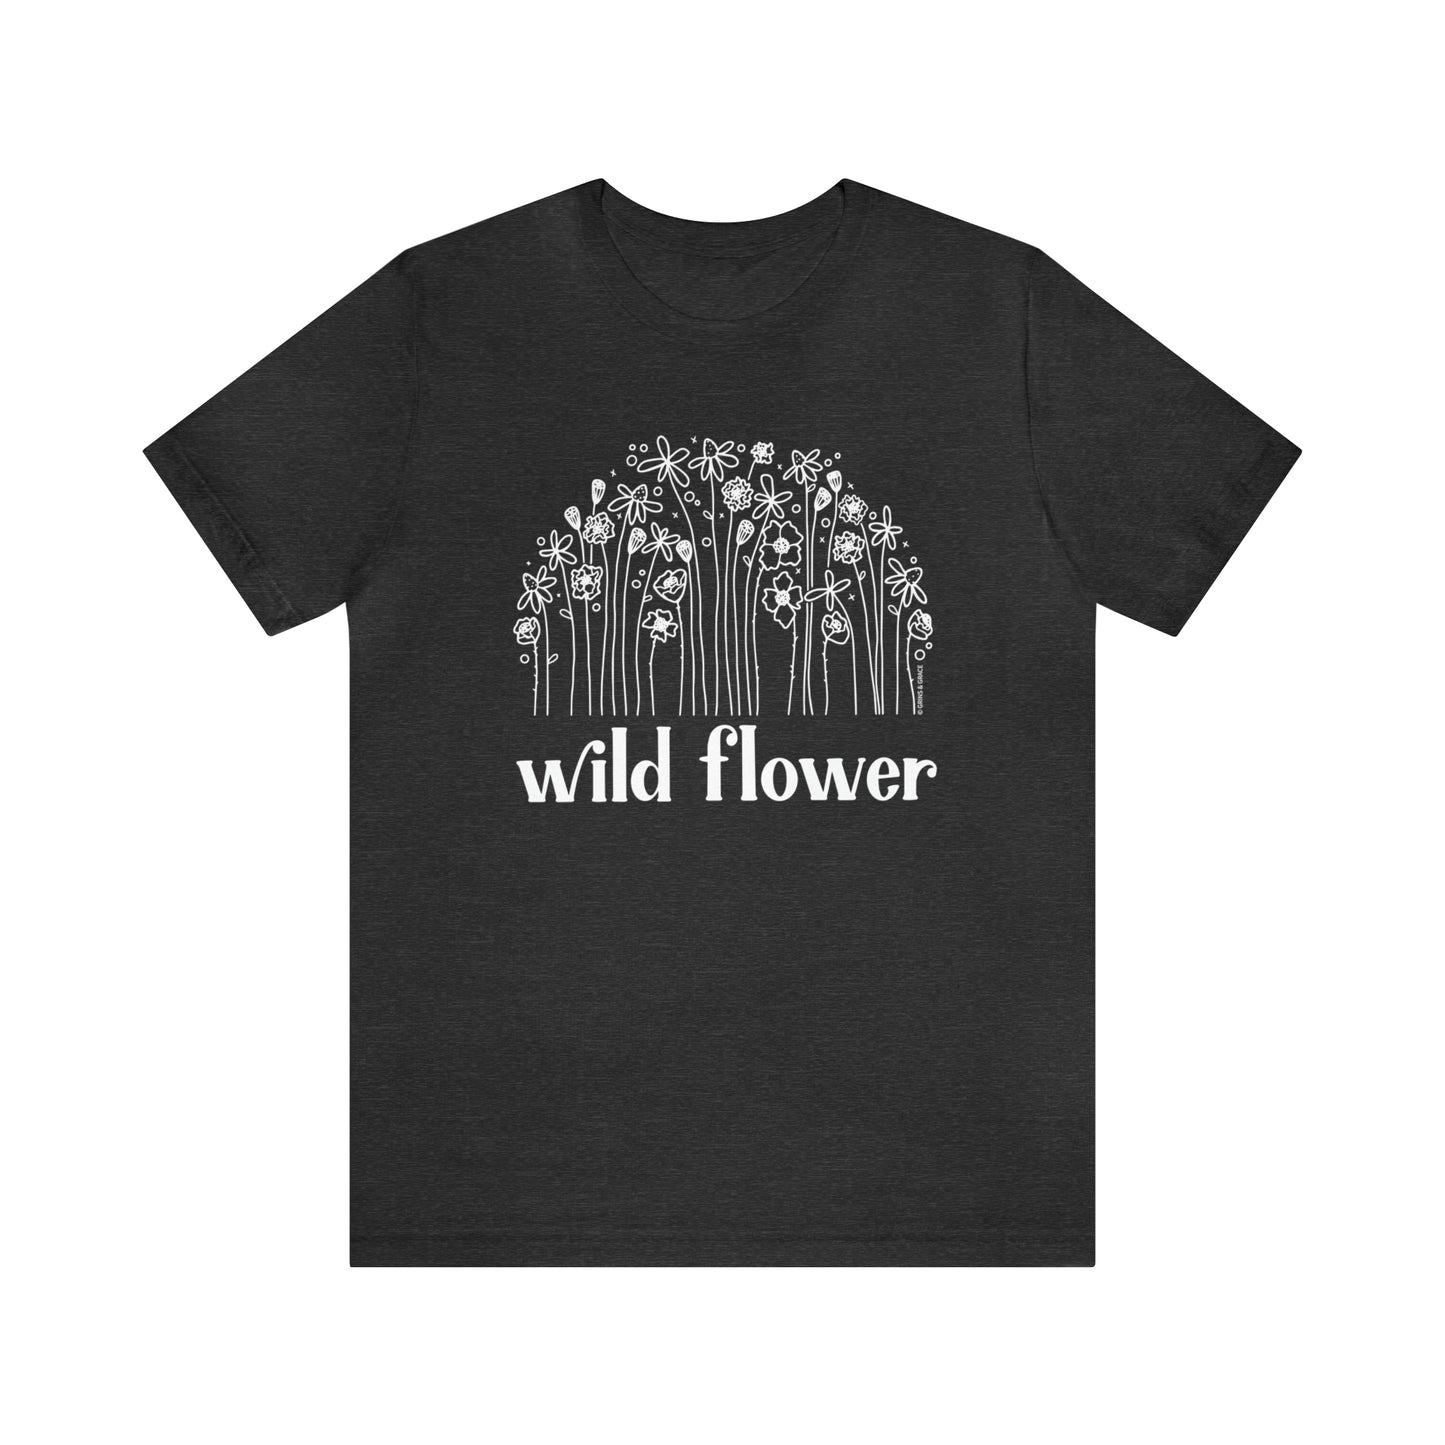 'WILD FLOWER' WOMENS T-SHIRT